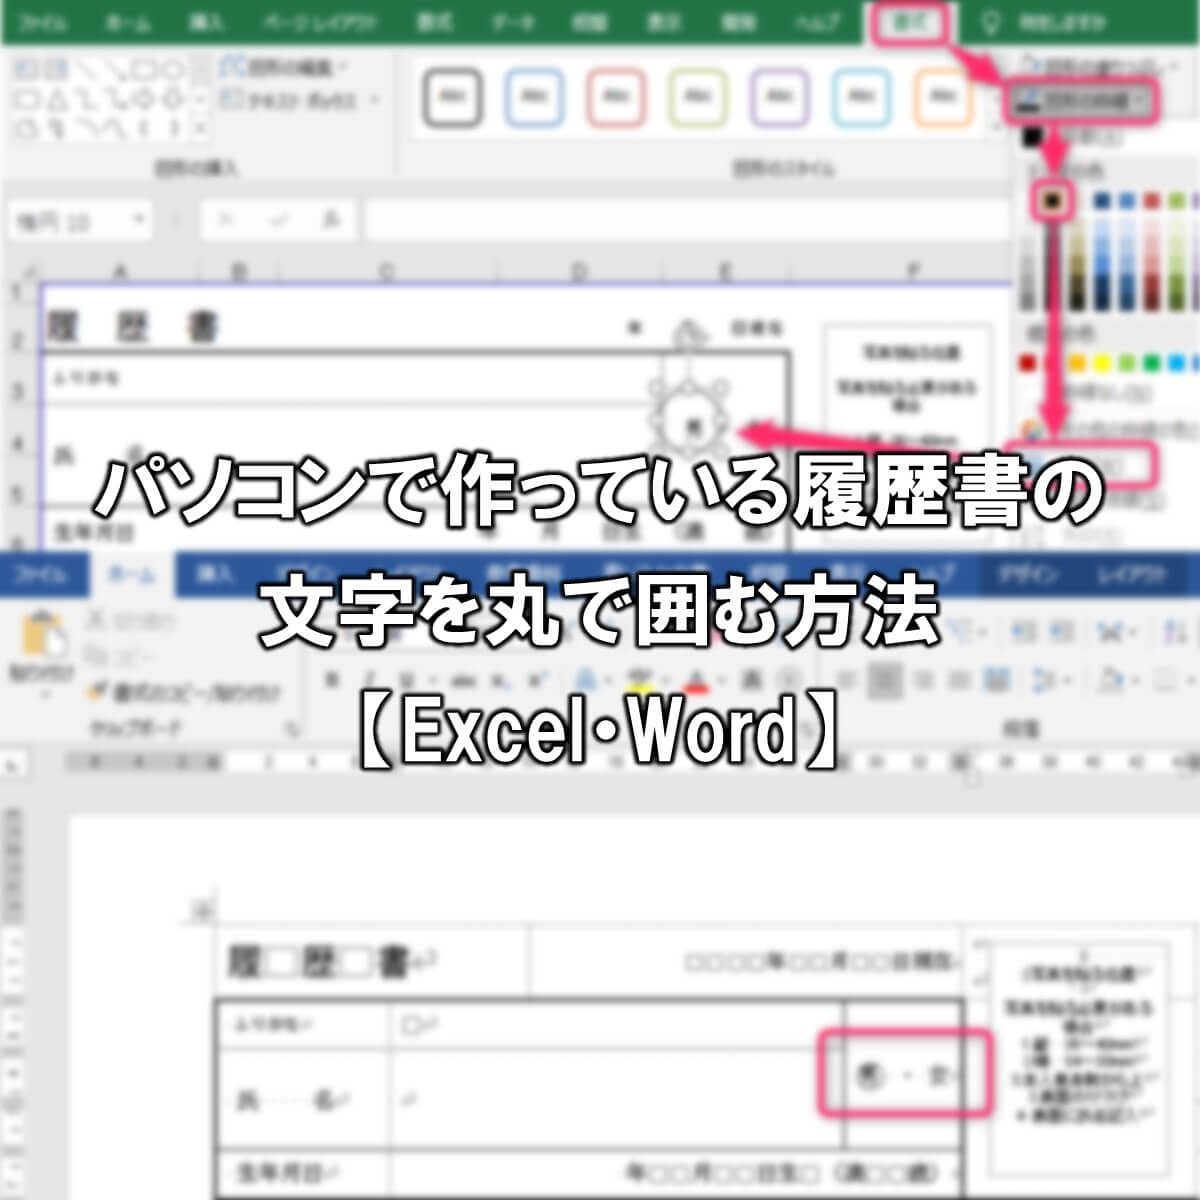 パソコンで作っている履歴書の文字を丸で囲む方法【Excel・Word】